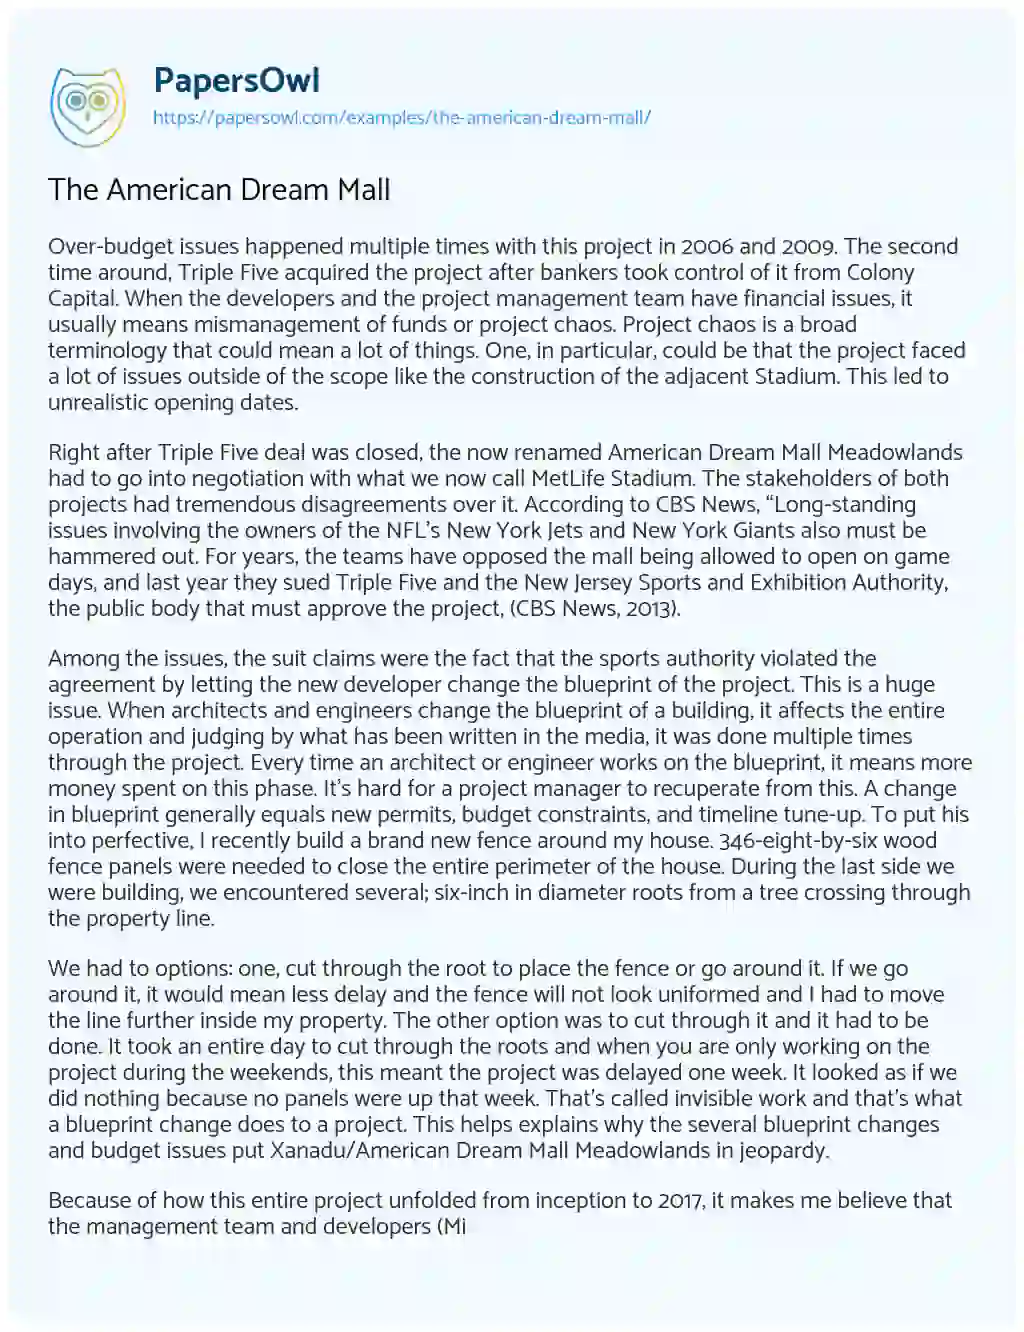 The American Dream Mall essay